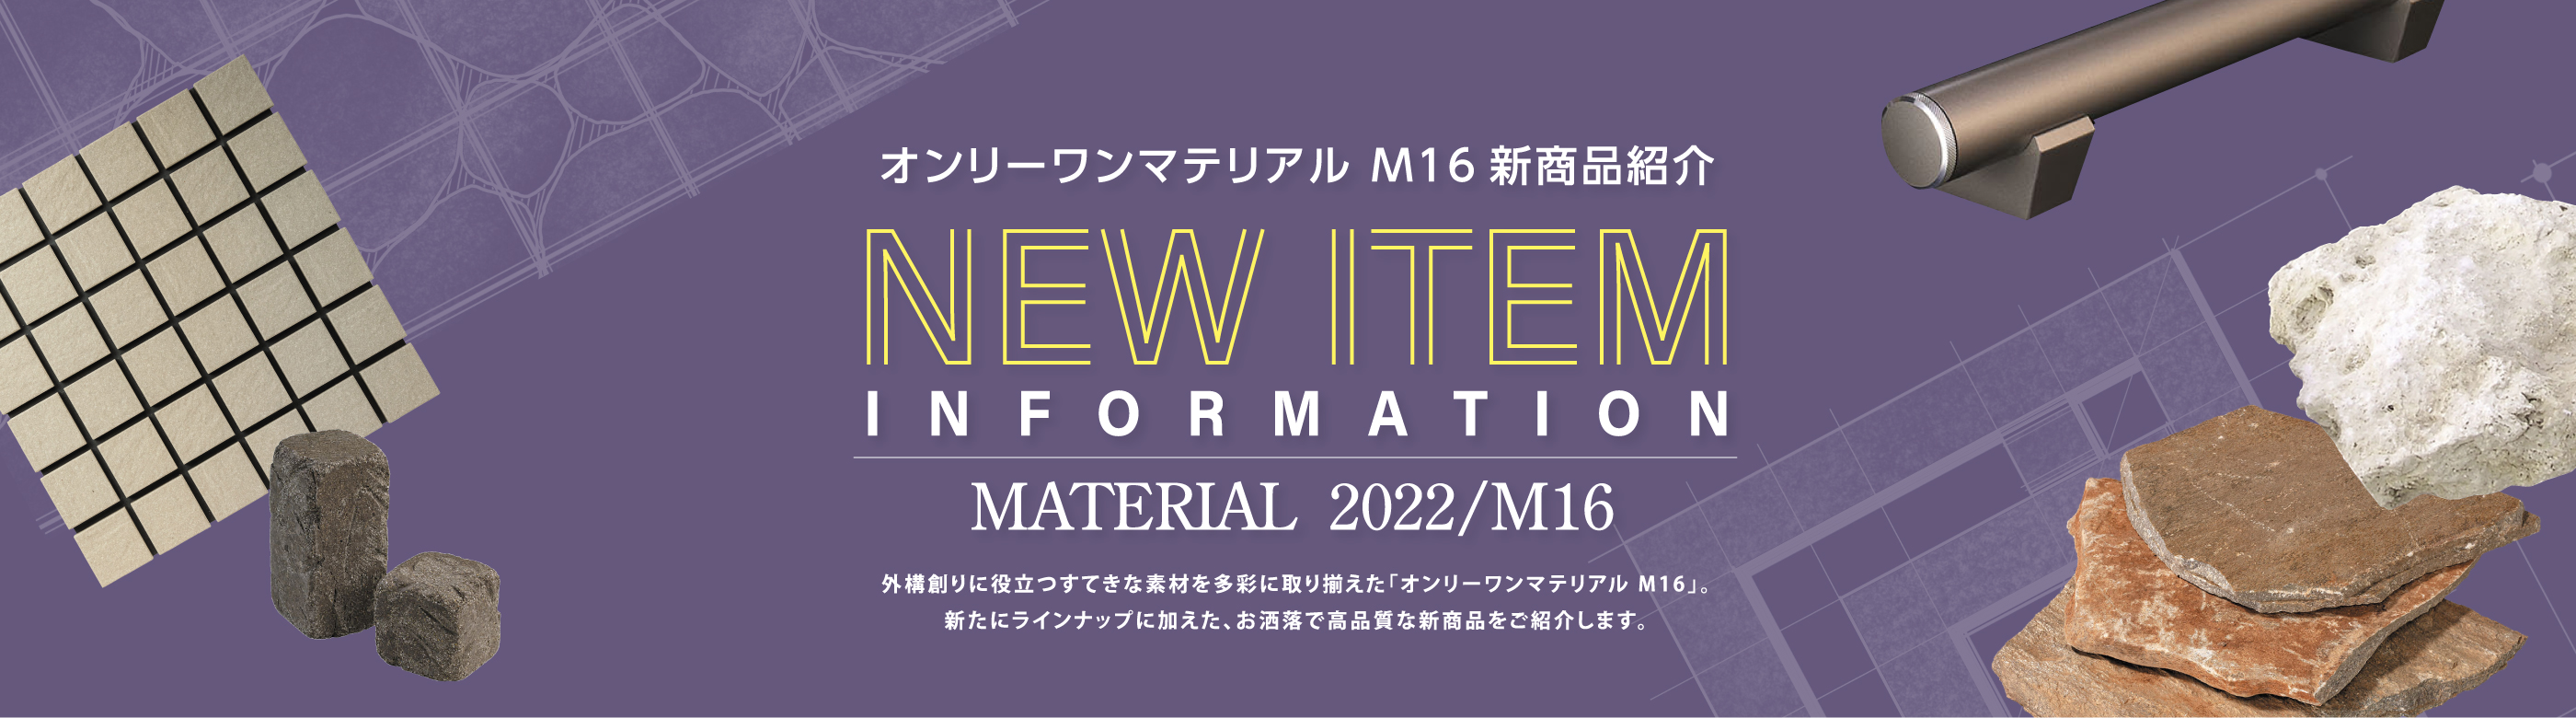 オンリーワンマテリアル M16 新商品紹介